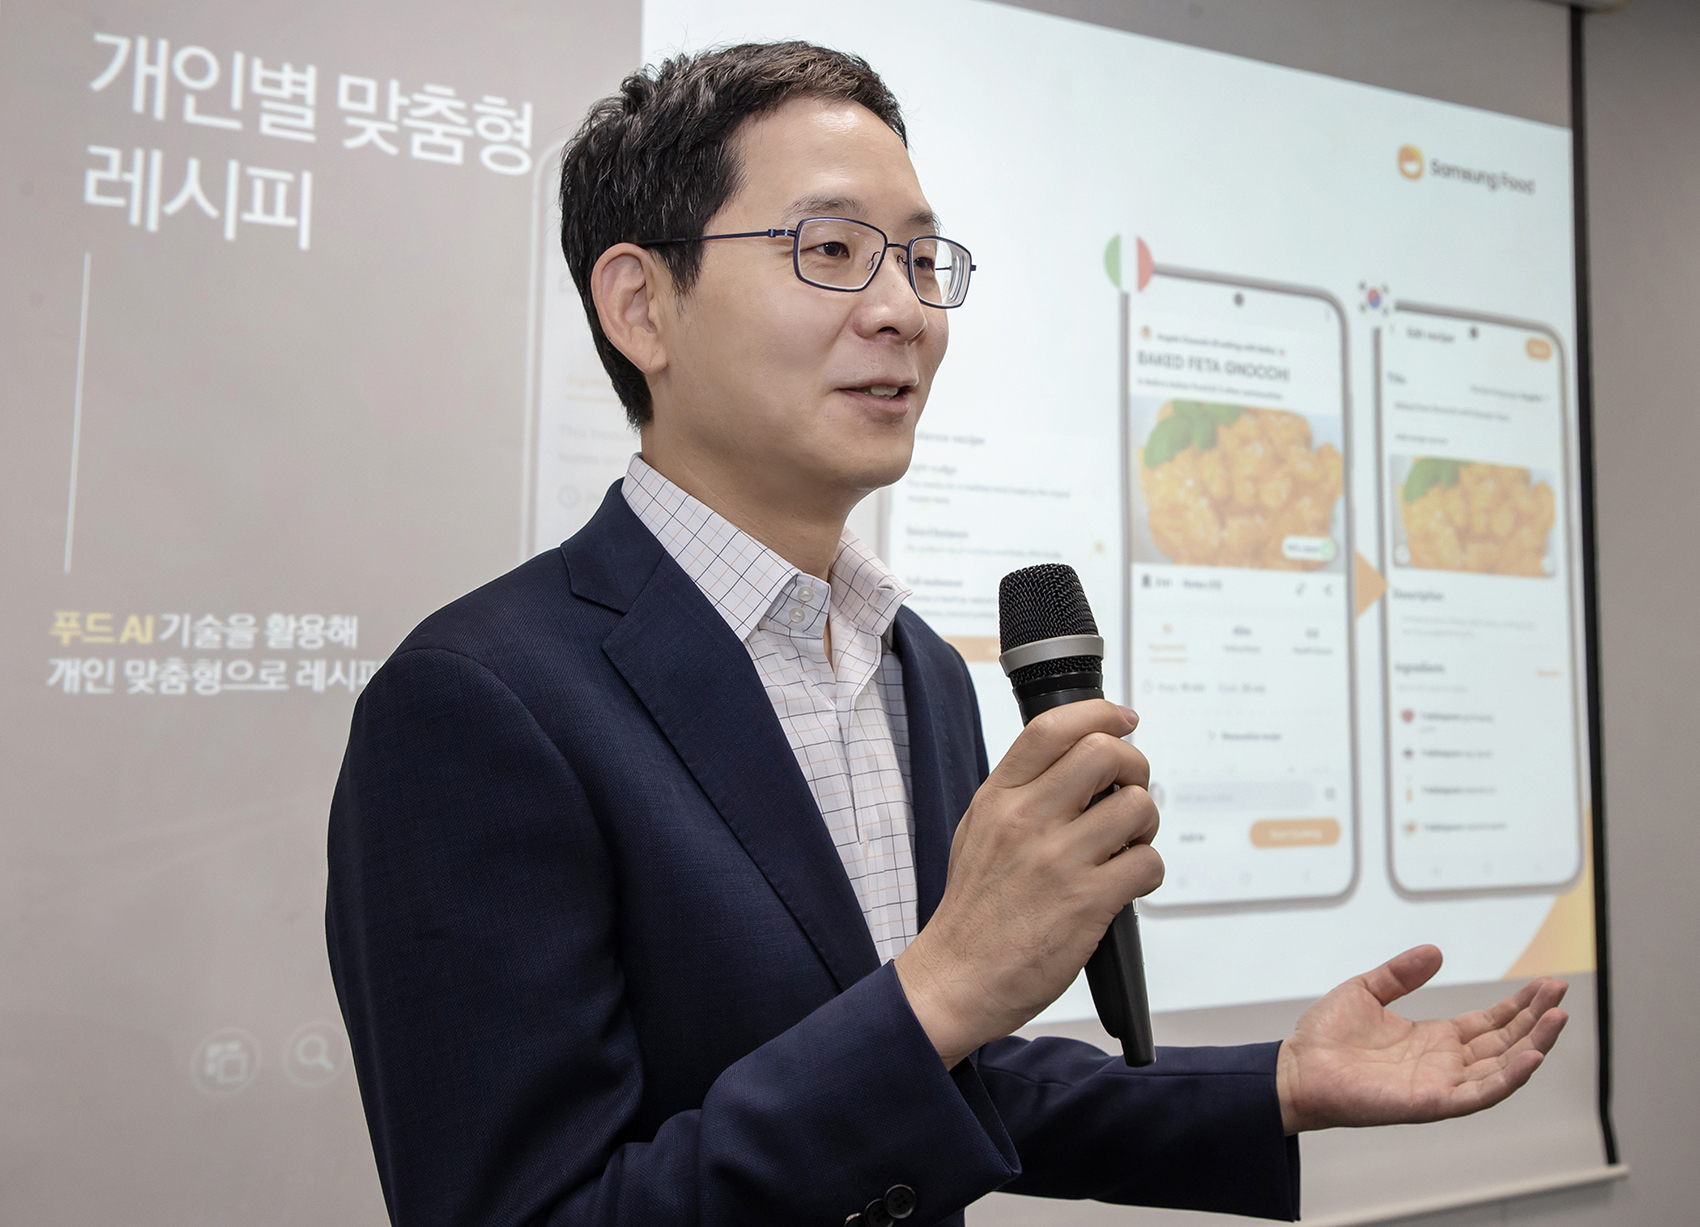 푸드 통합 플랫폼 ‘삼성 푸드’ 소개하는 박찬우 부사장